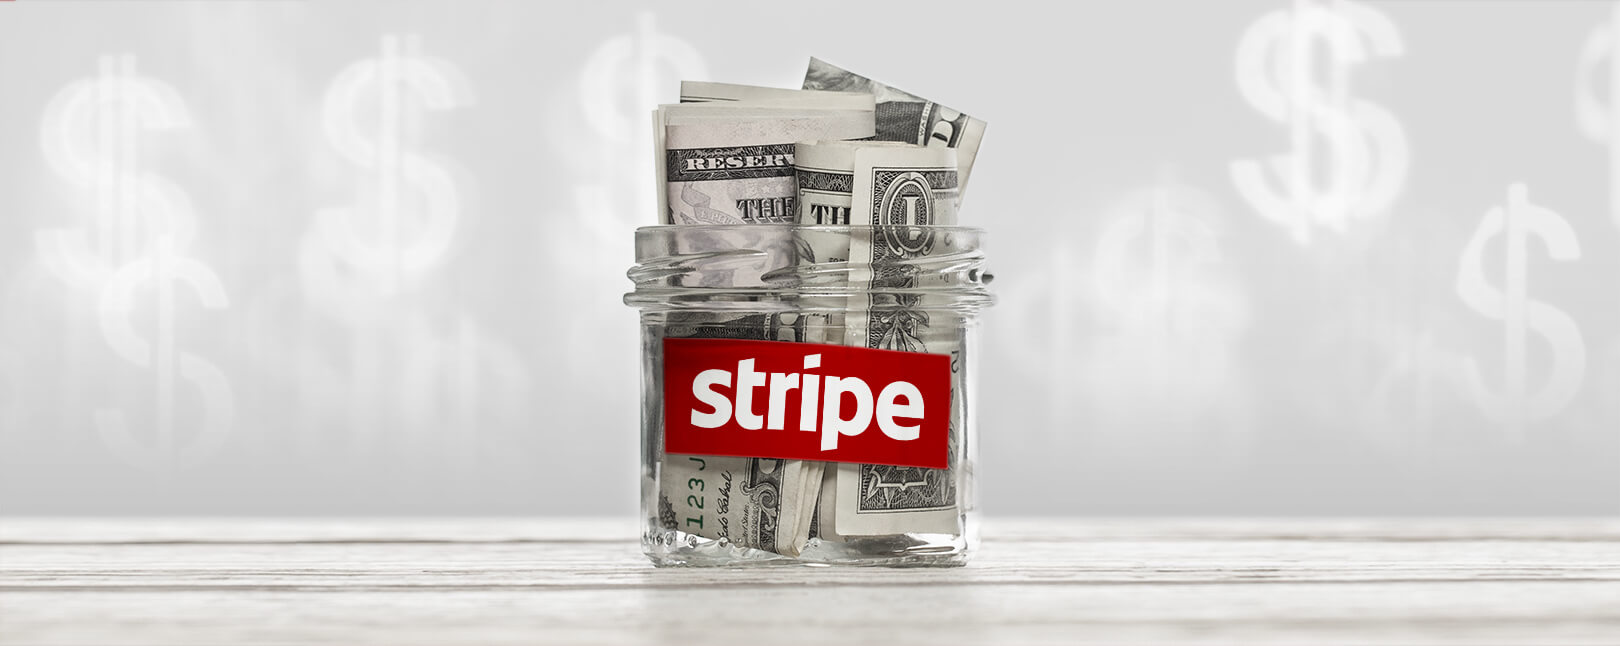 Stripe chargeback fee